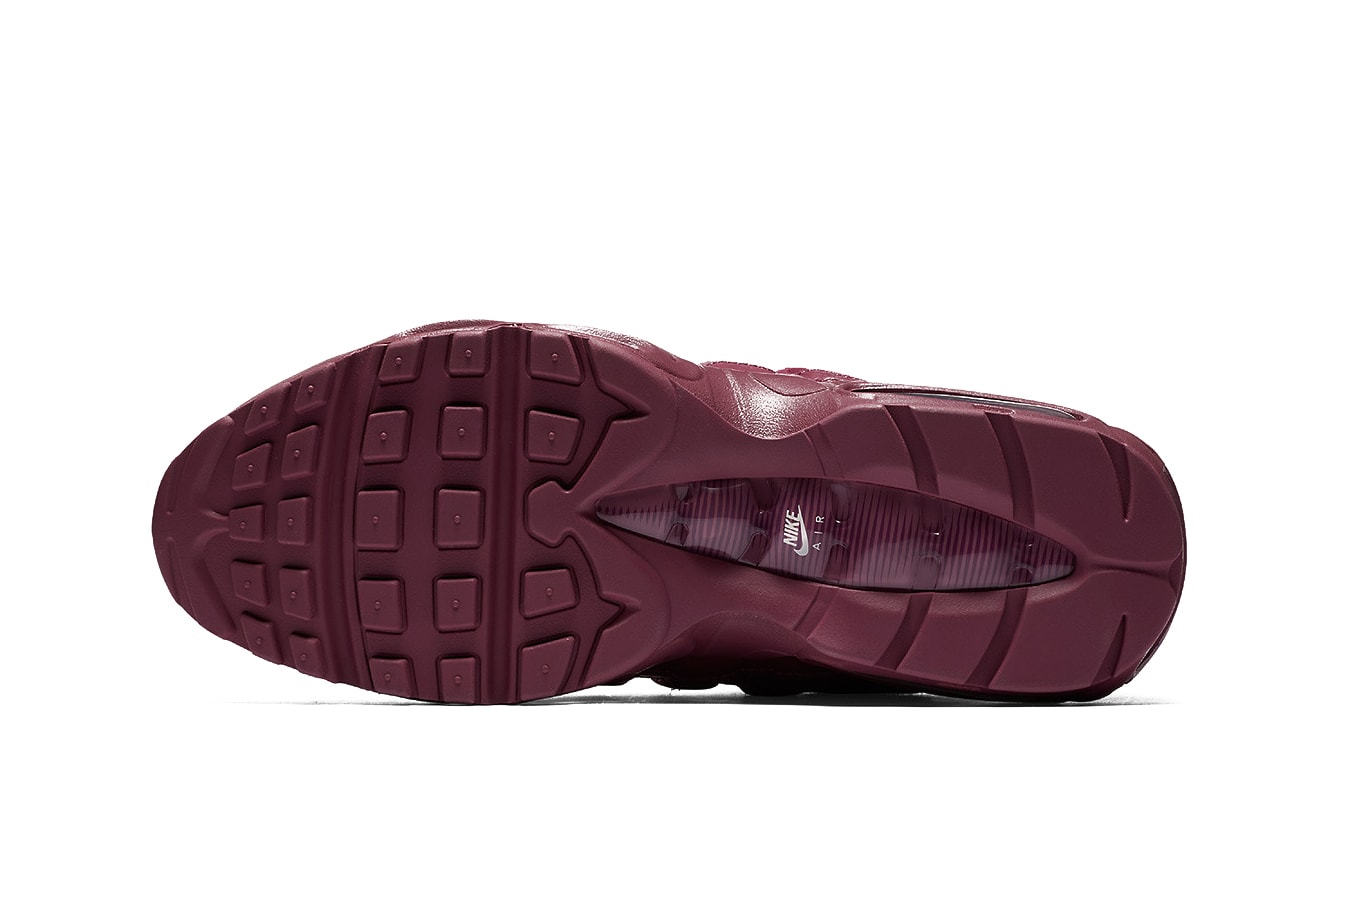 Nike Air Max 95 Vintage Wine Silhouette Burgundy Red Purple Dark Oxblood Shoe Sneaker